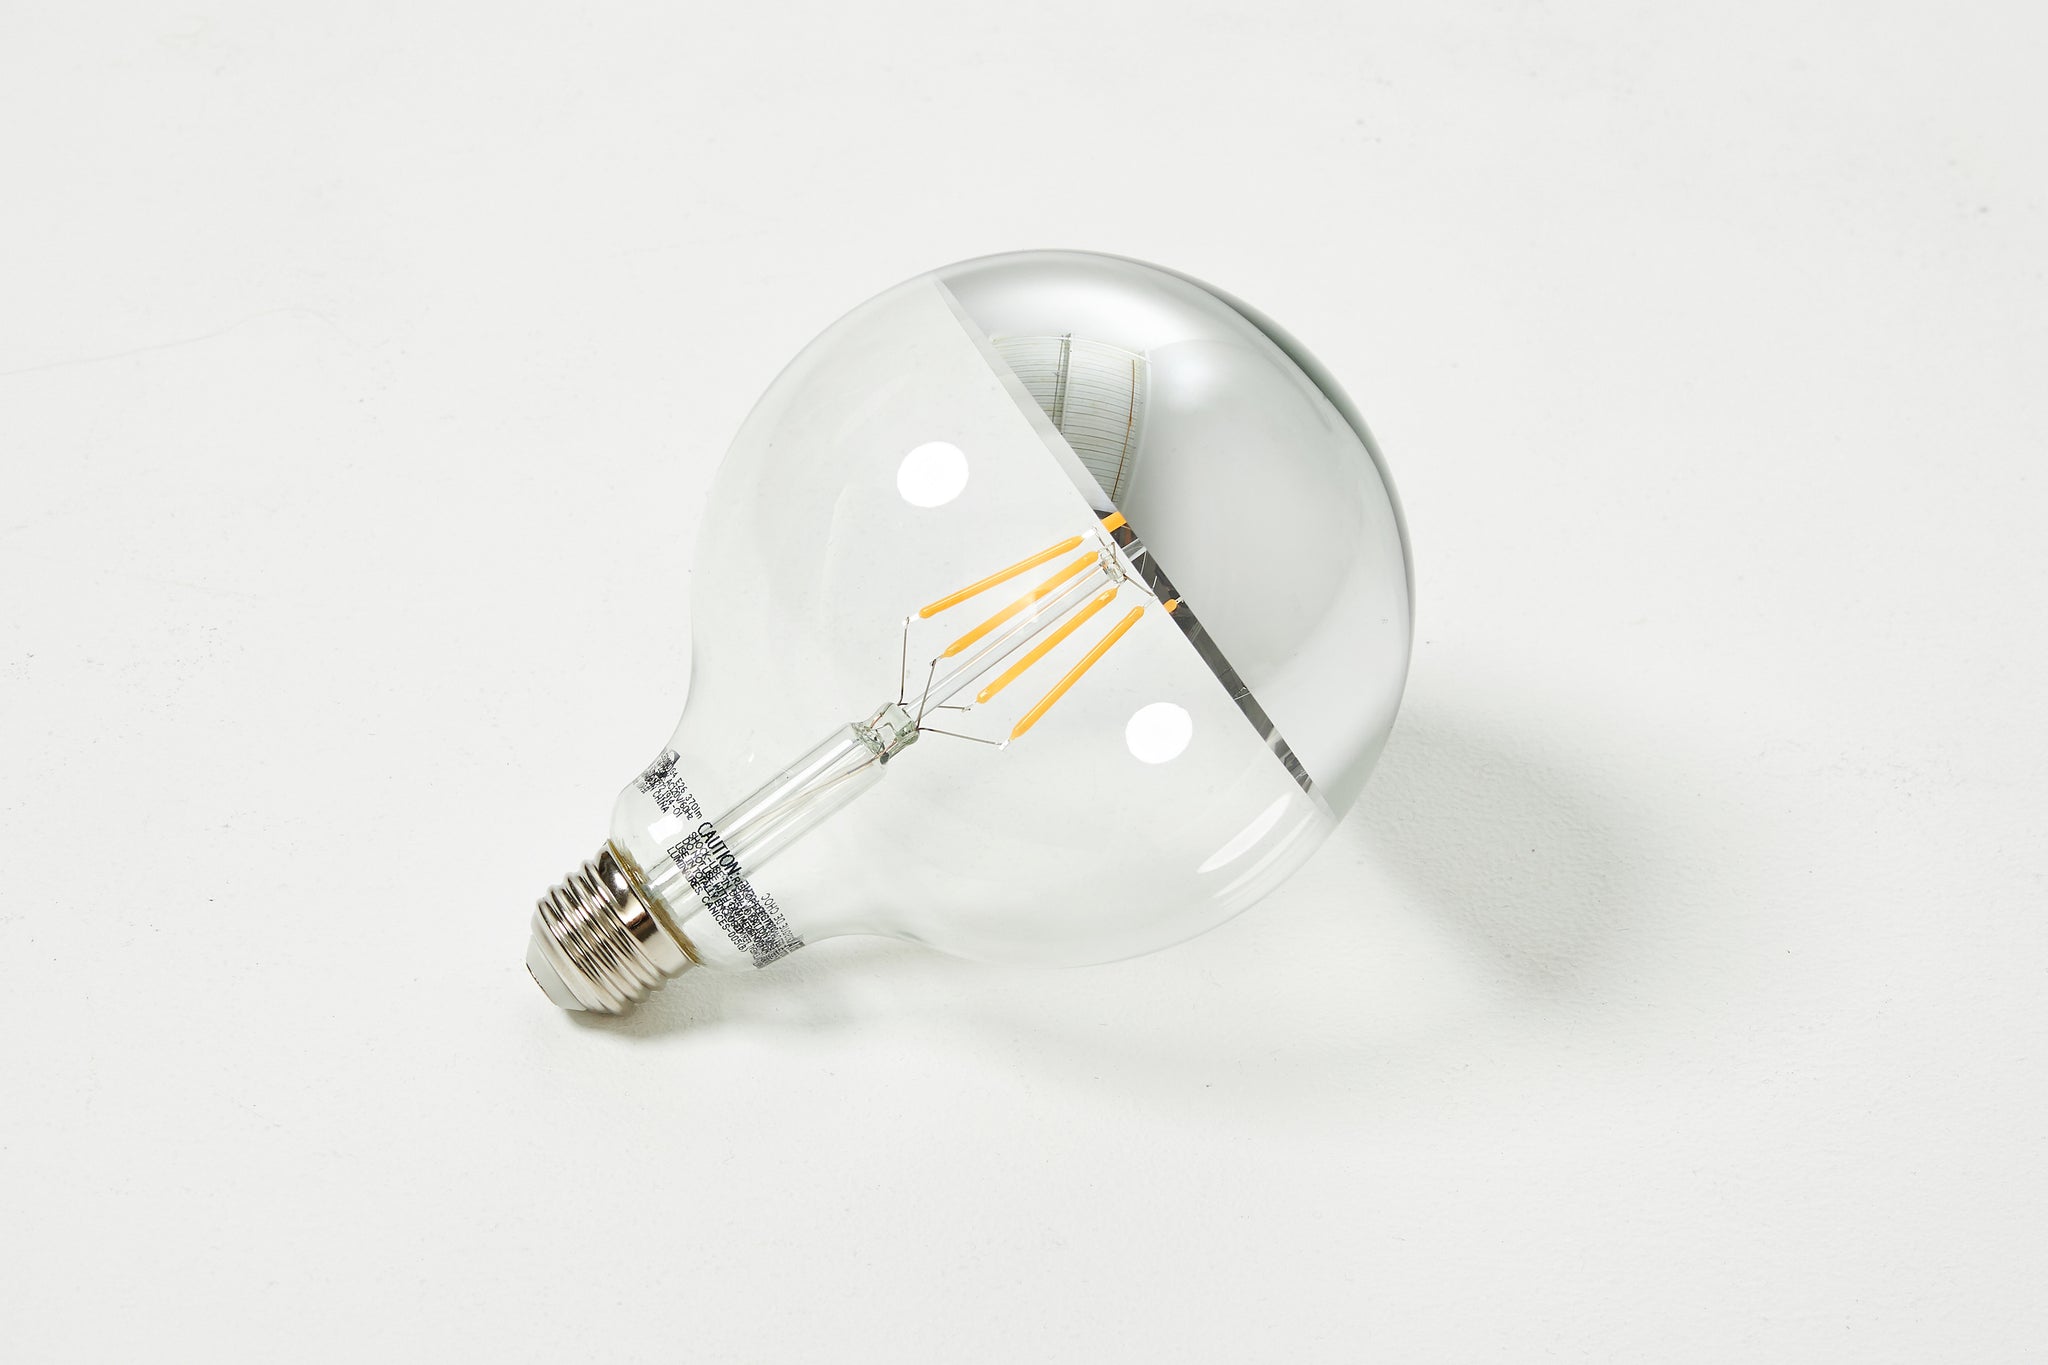 Bommel Lampe de Table  Lampe Bouteille sur base de béton – Atelier Stōbben